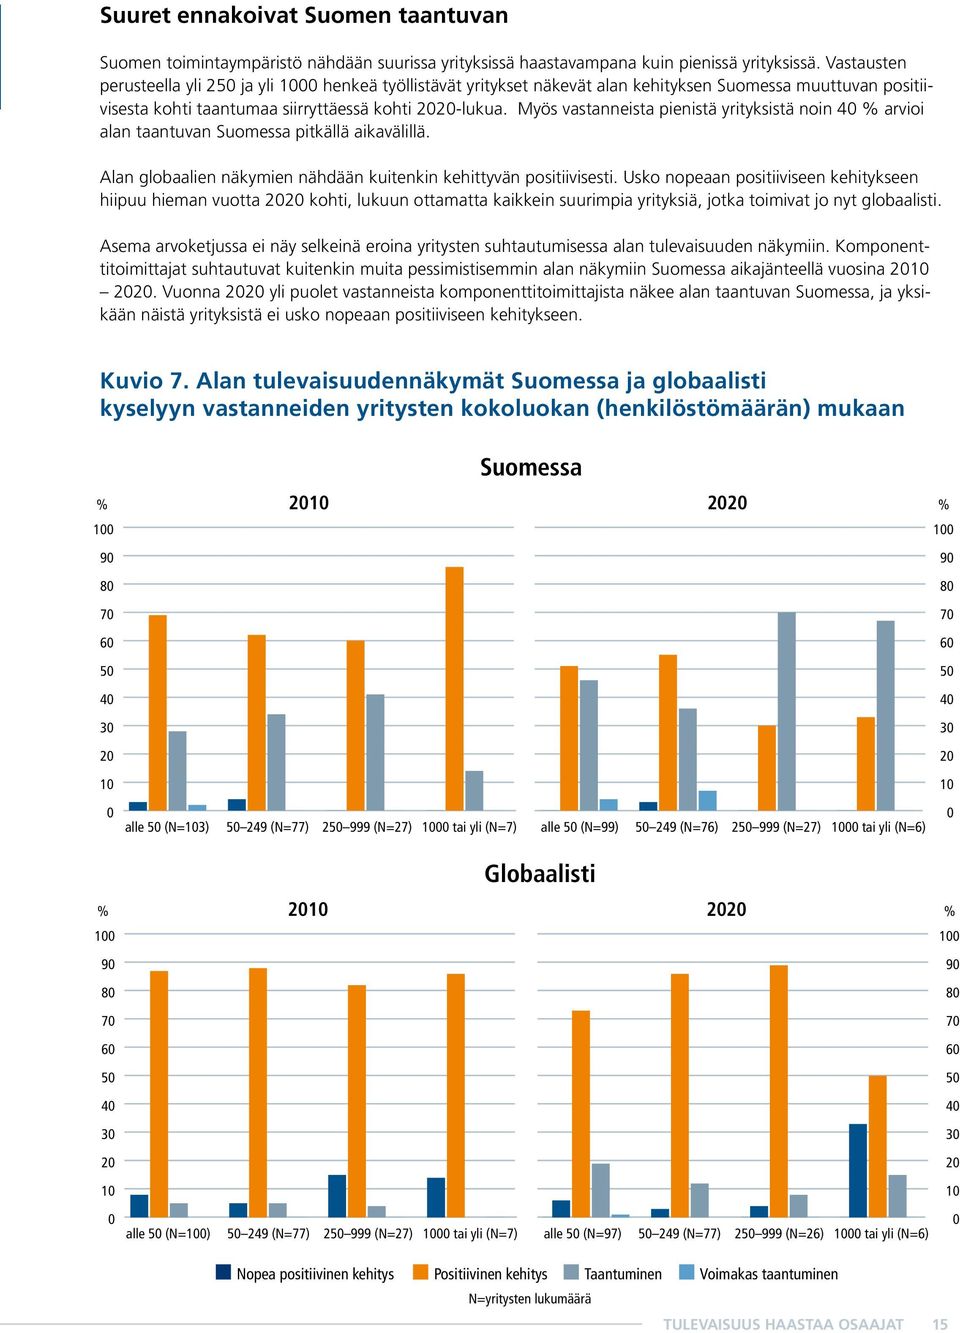 Myös vastanneista pienistä yrityksistä noin 40 % arvioi alan taantuvan Suomessa pitkällä aikavälillä. Alan globaalien näkymien nähdään kuitenkin kehittyvän positiivisesti.